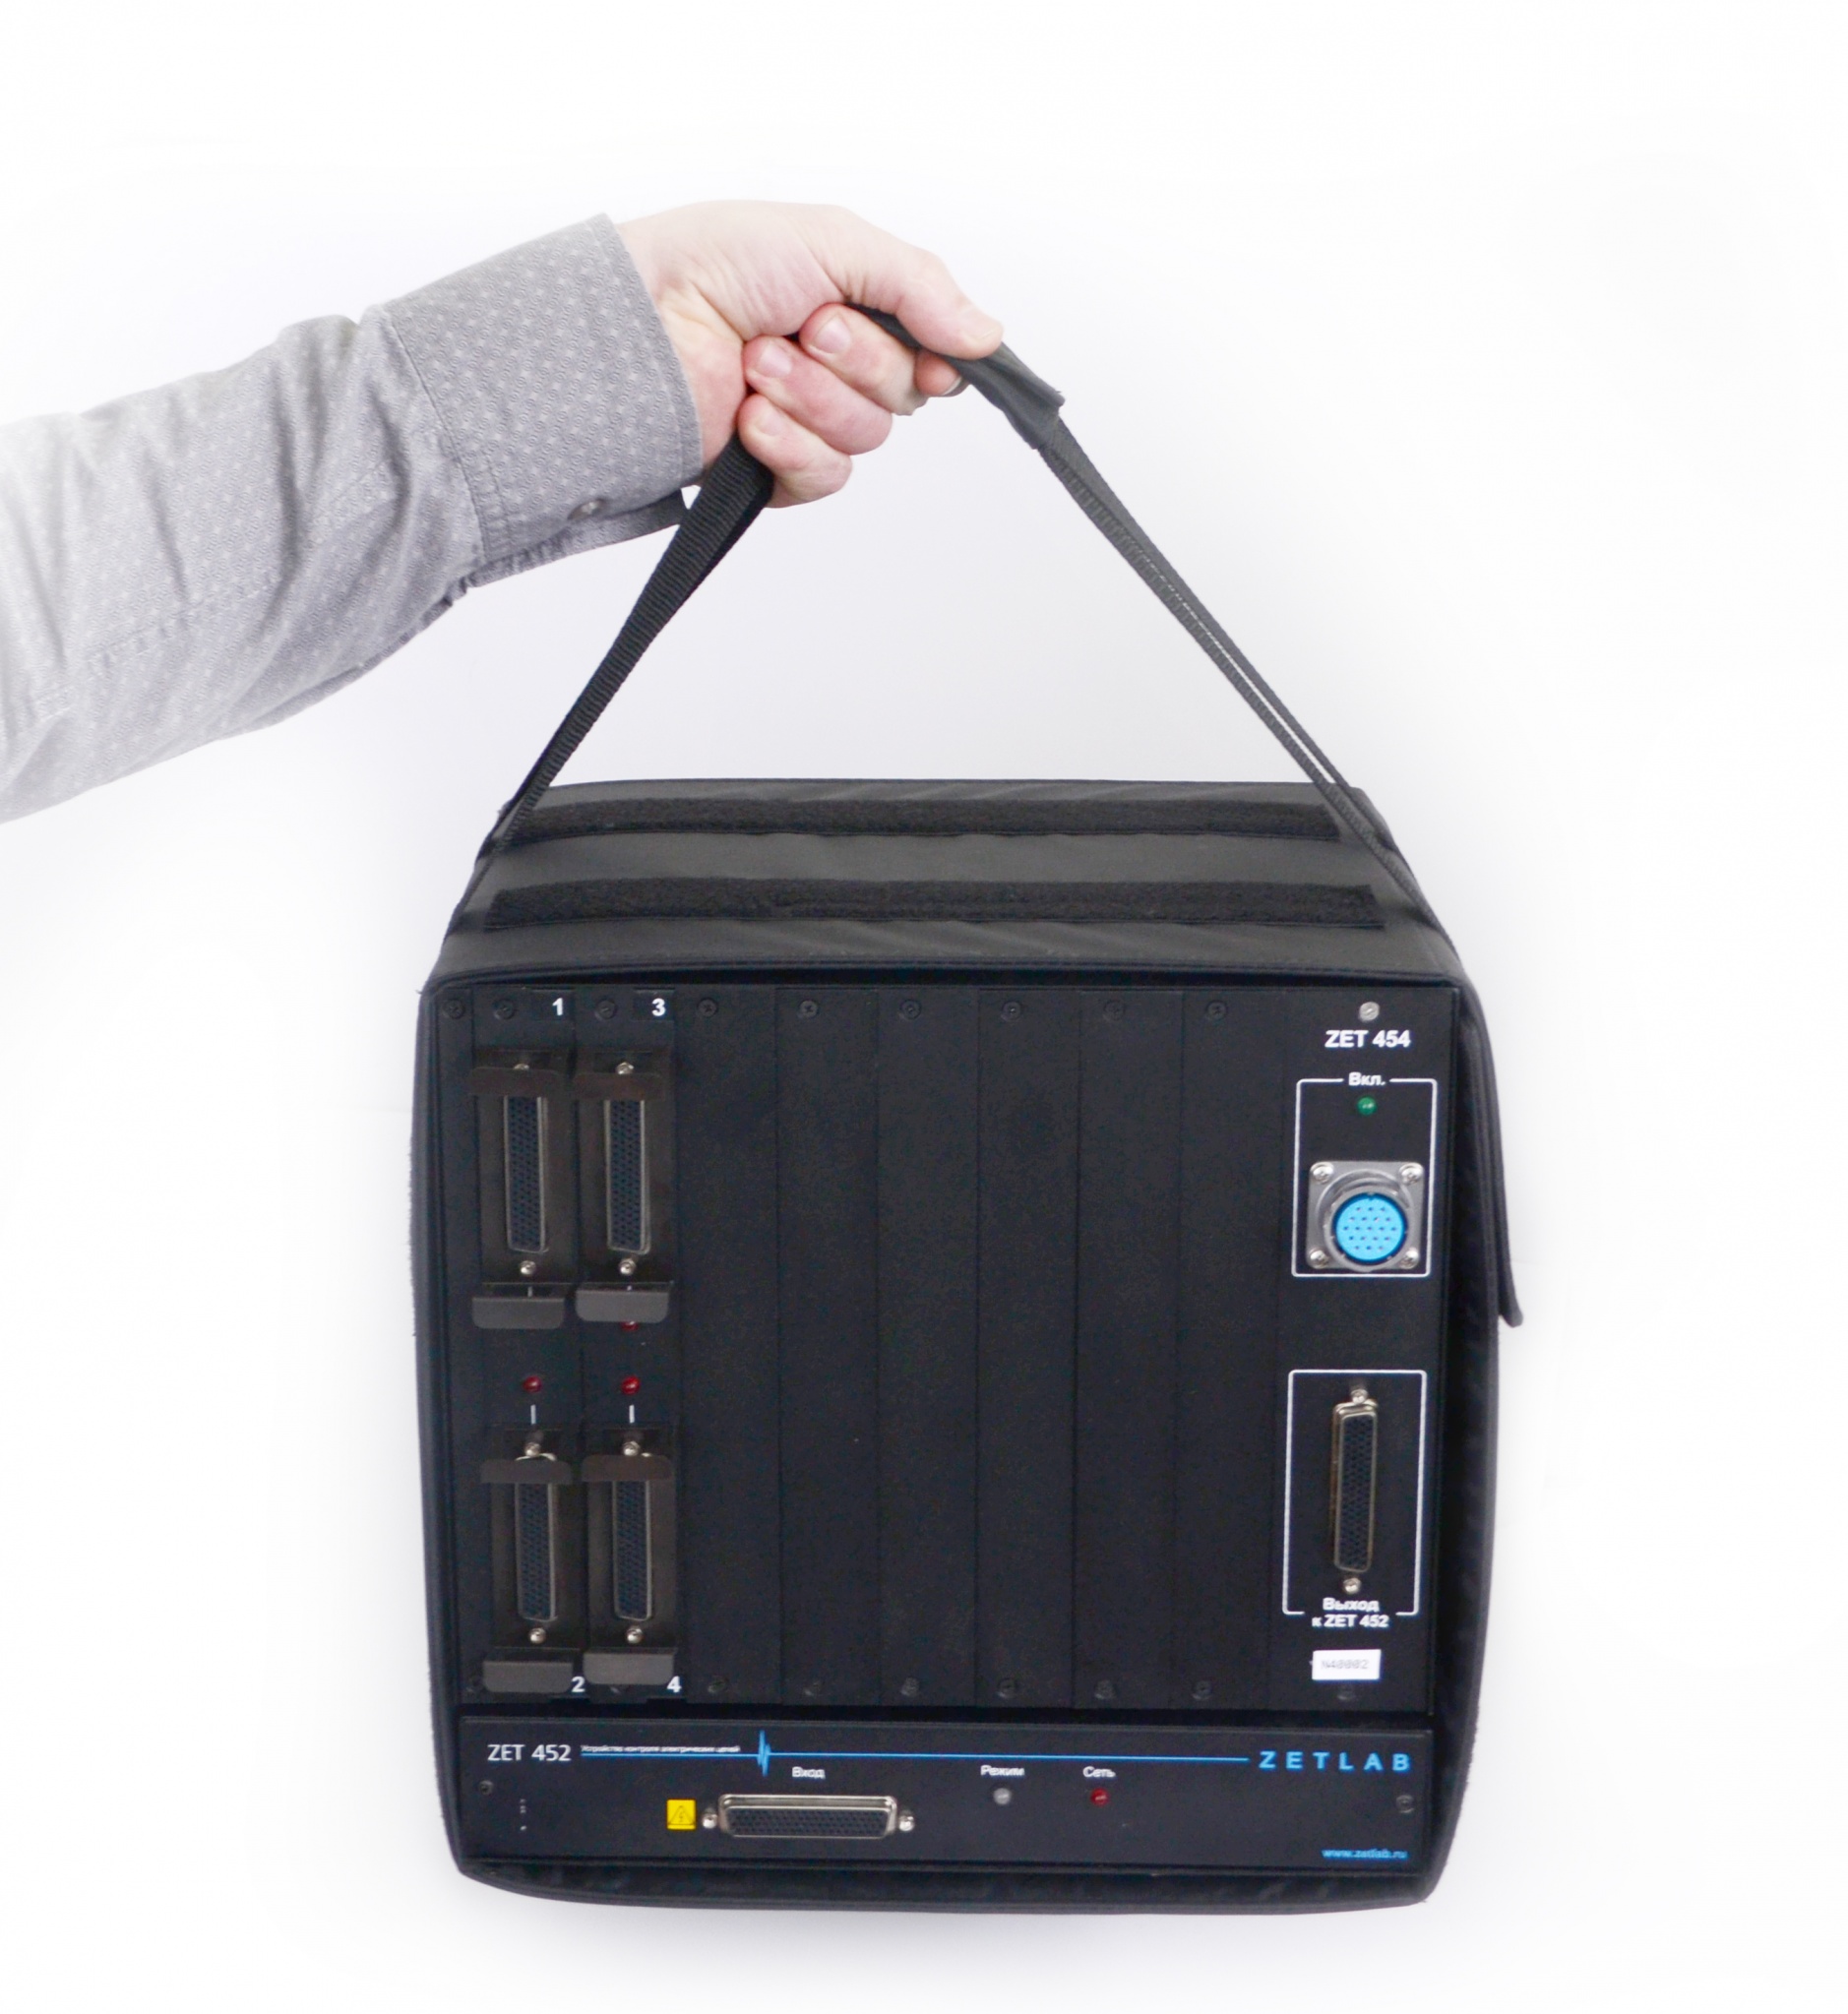 Устройство контроля электрических цепей ZET 452 комплектуется сумкой для удобства переноски и измерений